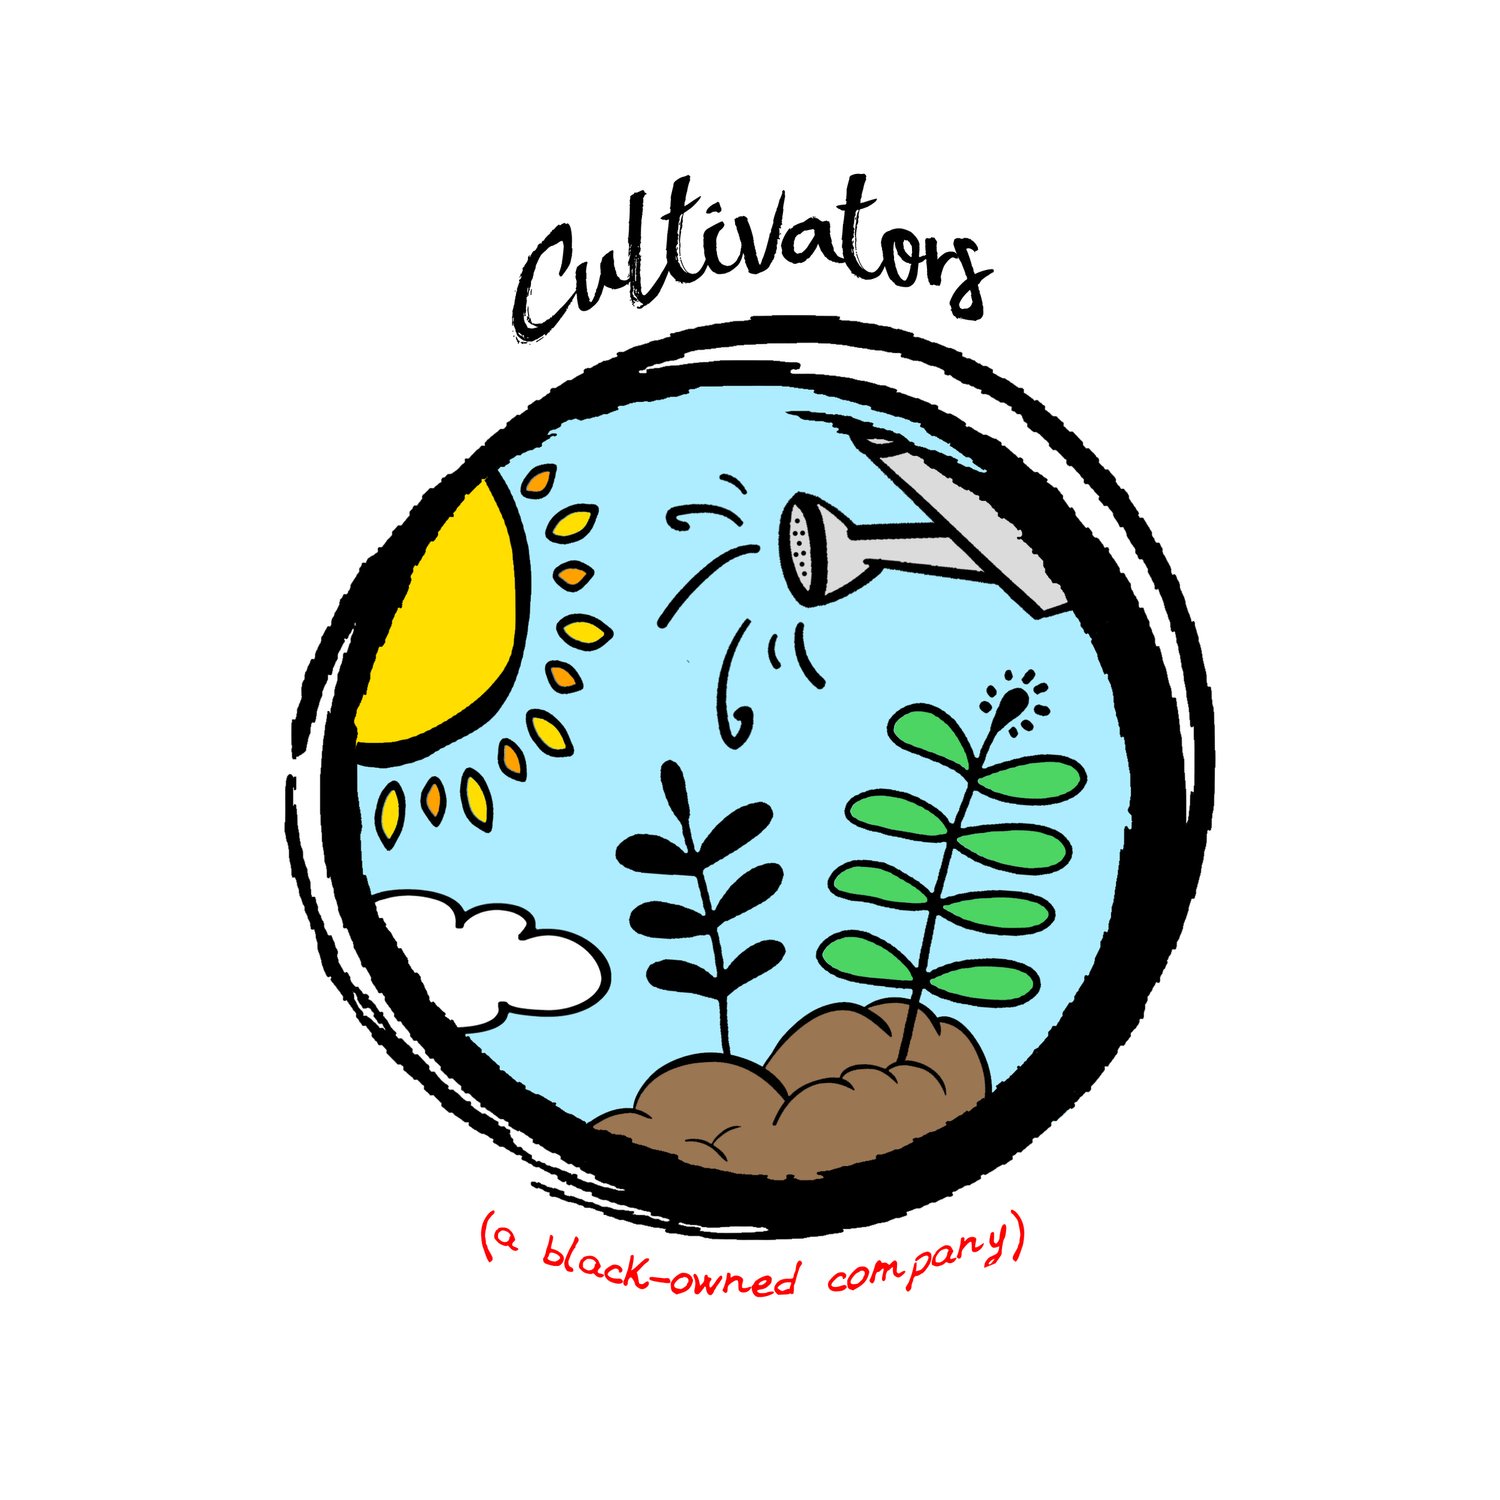 Cultivators